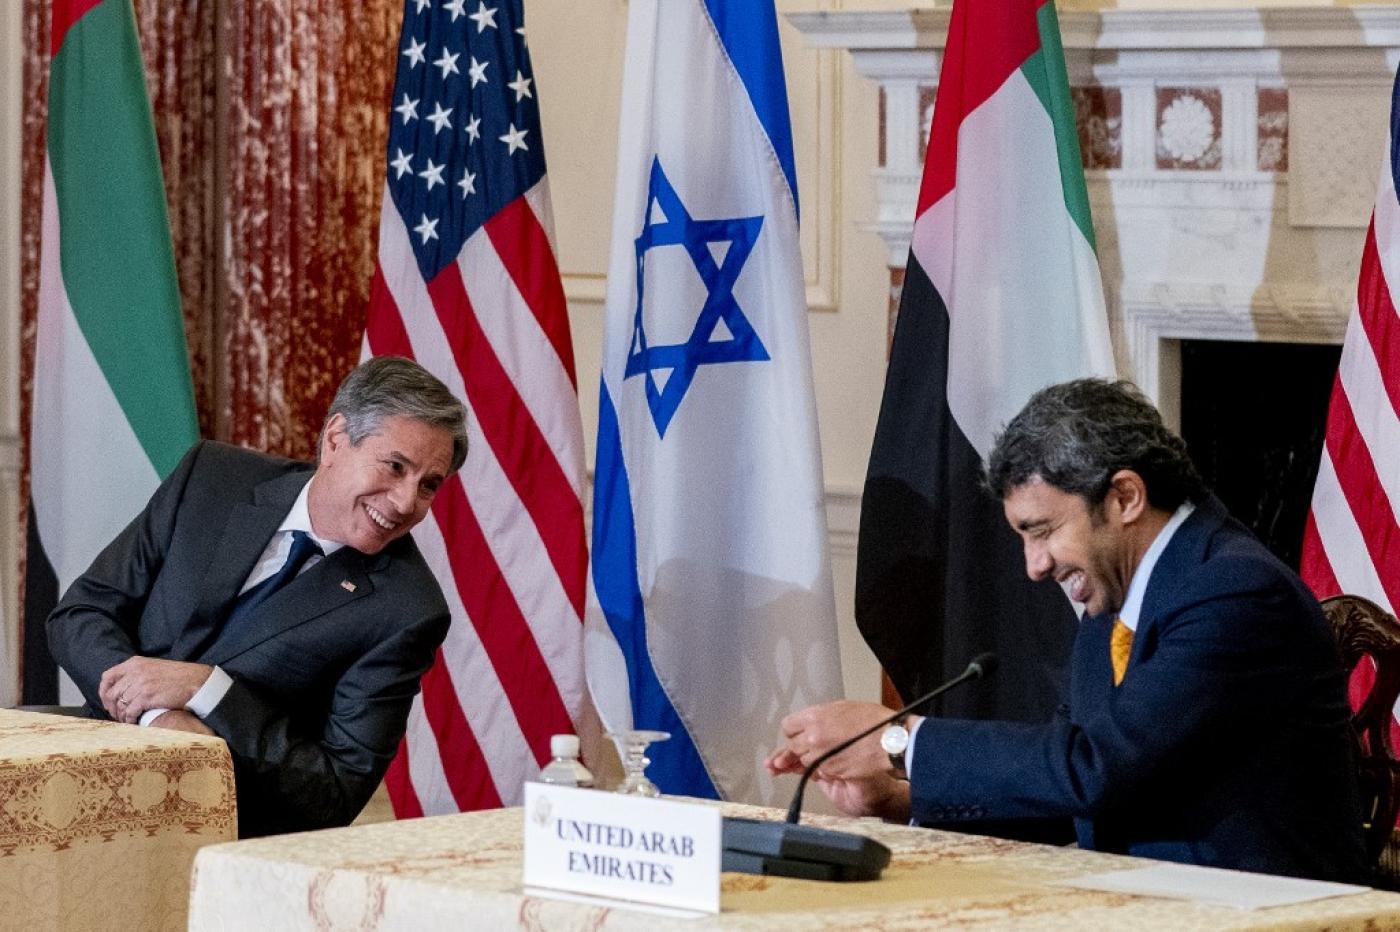 Le secrétaire d’État Antony Blinken (à gauche) et le ministre émirati des Affaires étrangères Abdallah ben Zayed al-Nahyane (à droite) participent à une réunion bilatérale au département d’État à Washington, le 13 octobre 2021 (AFP)